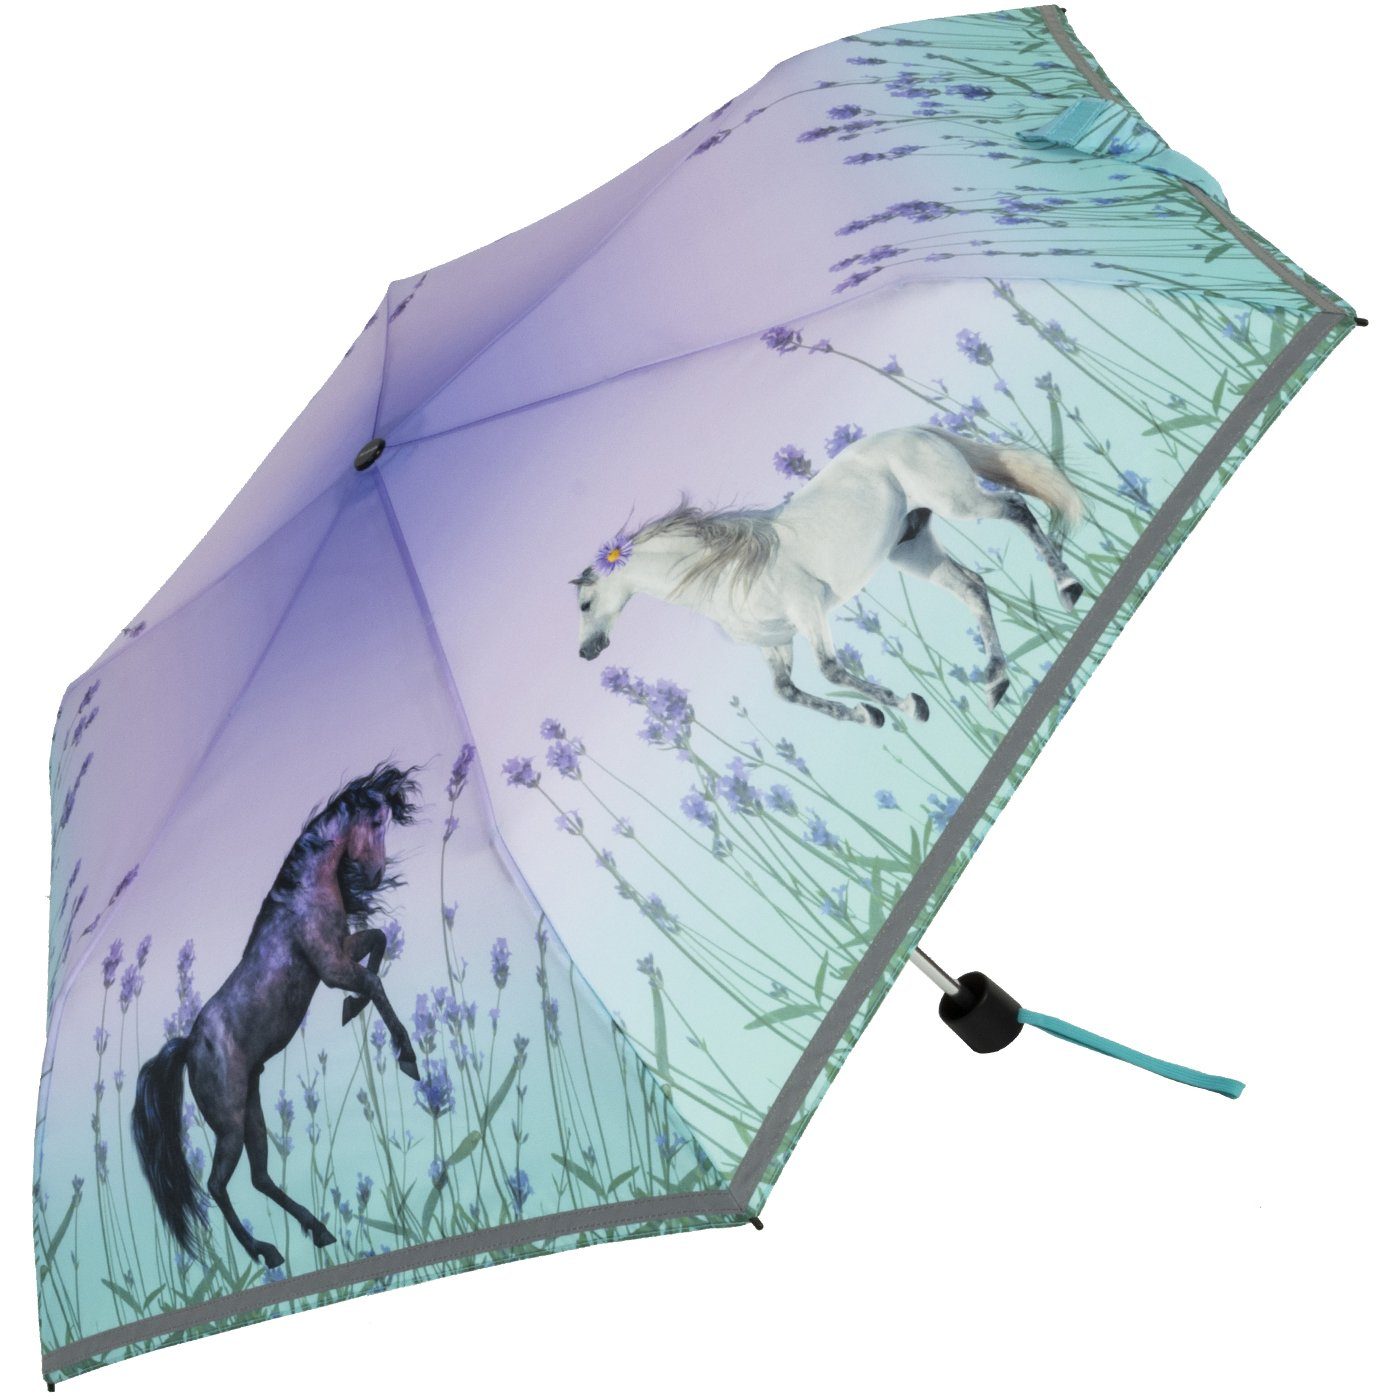 Taschenregenschirm Horses mit Wild Knirps® Kinderschirm 4Kids dem Schulweg, Pferde, reflective auf Reflexborte, Sicherheit